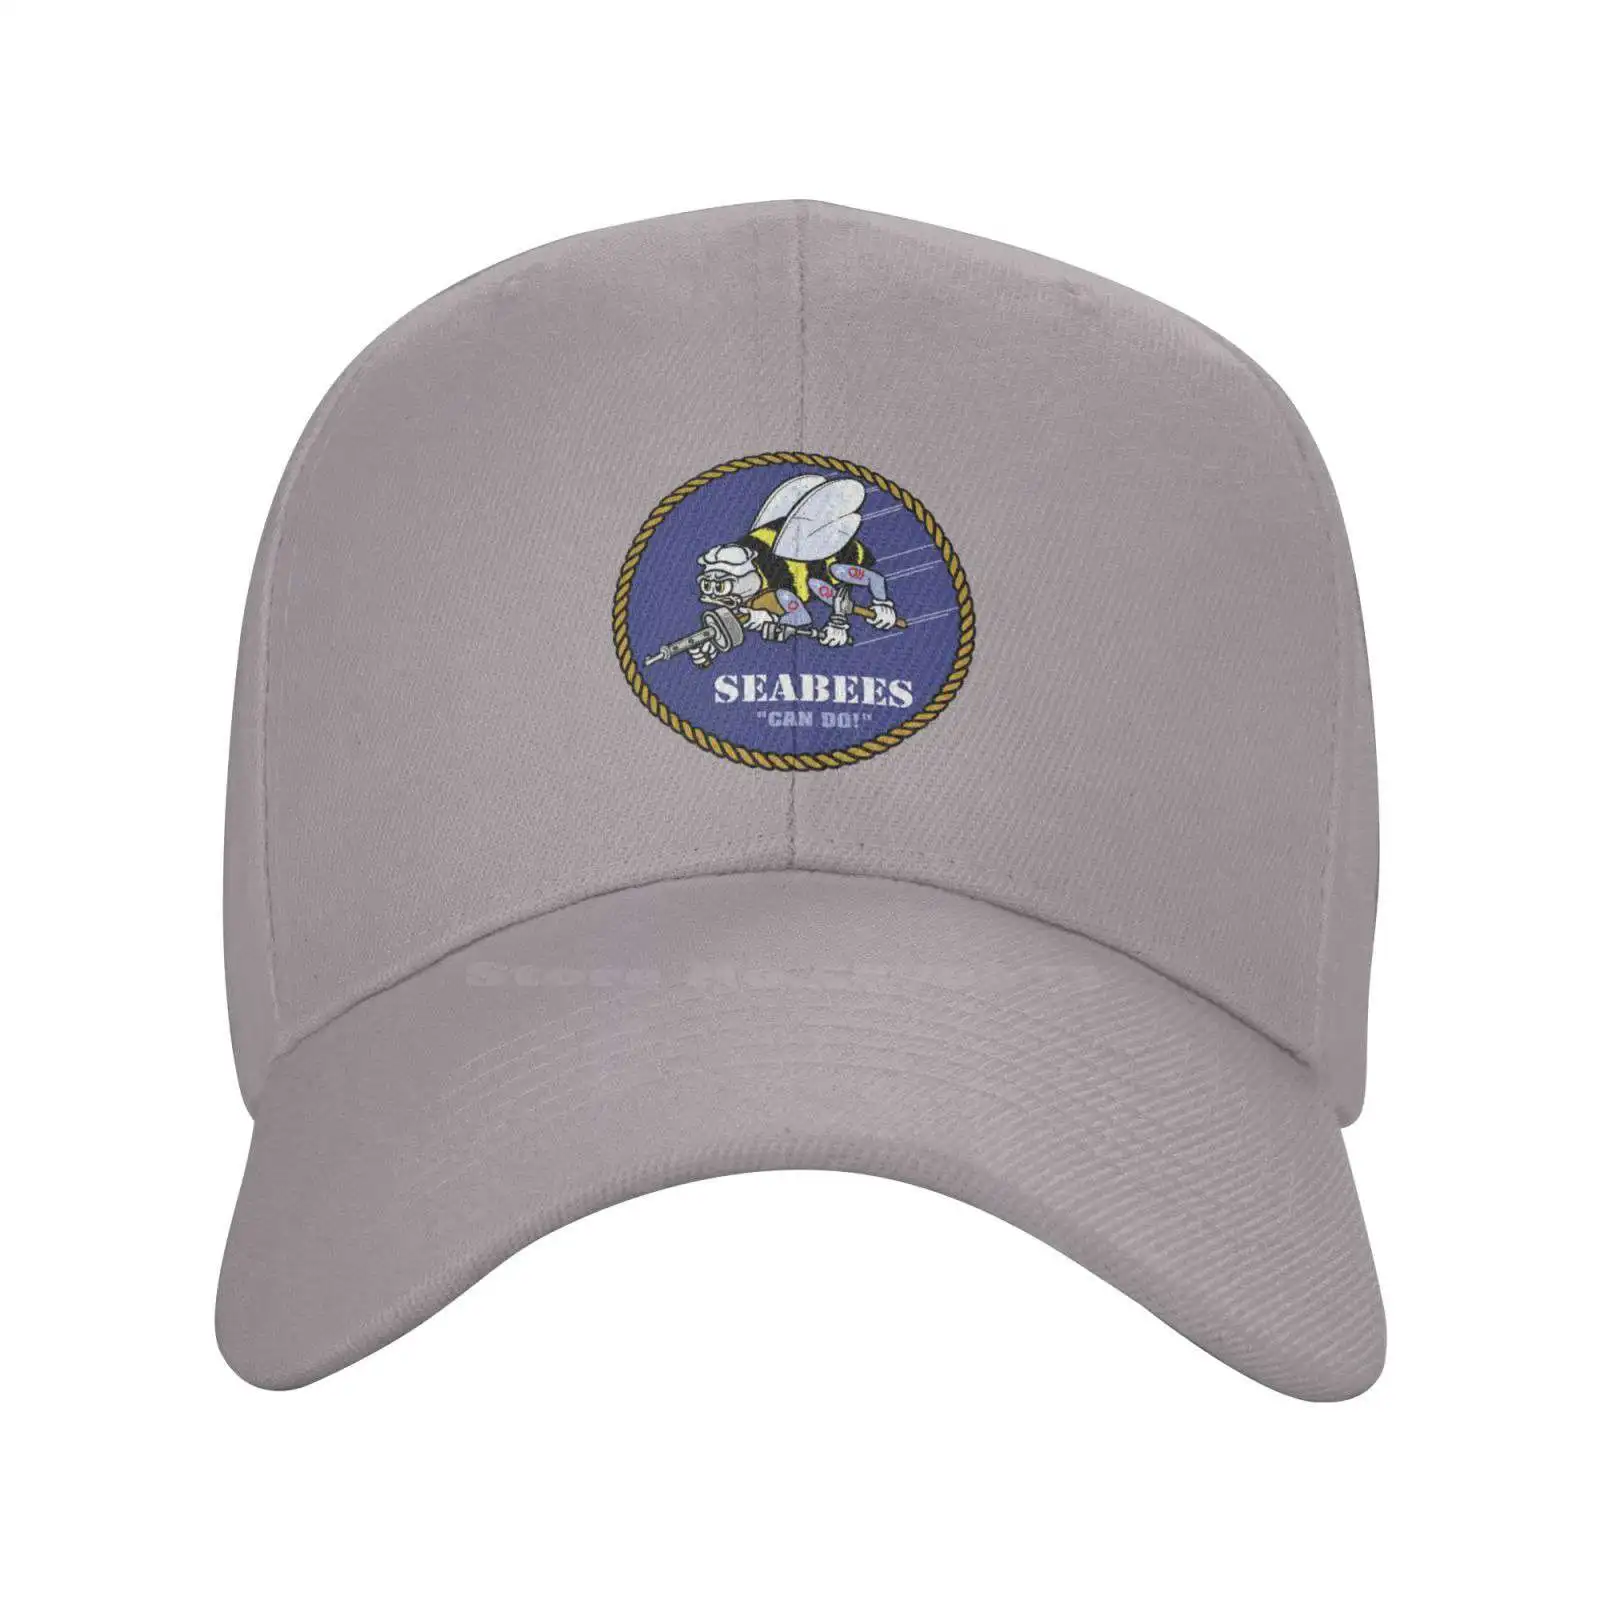 Графическая кепка с логотипом Seabees, высококачественная джинсовая кепка, вязаная шапка, бейсболка . ' - ' . 1